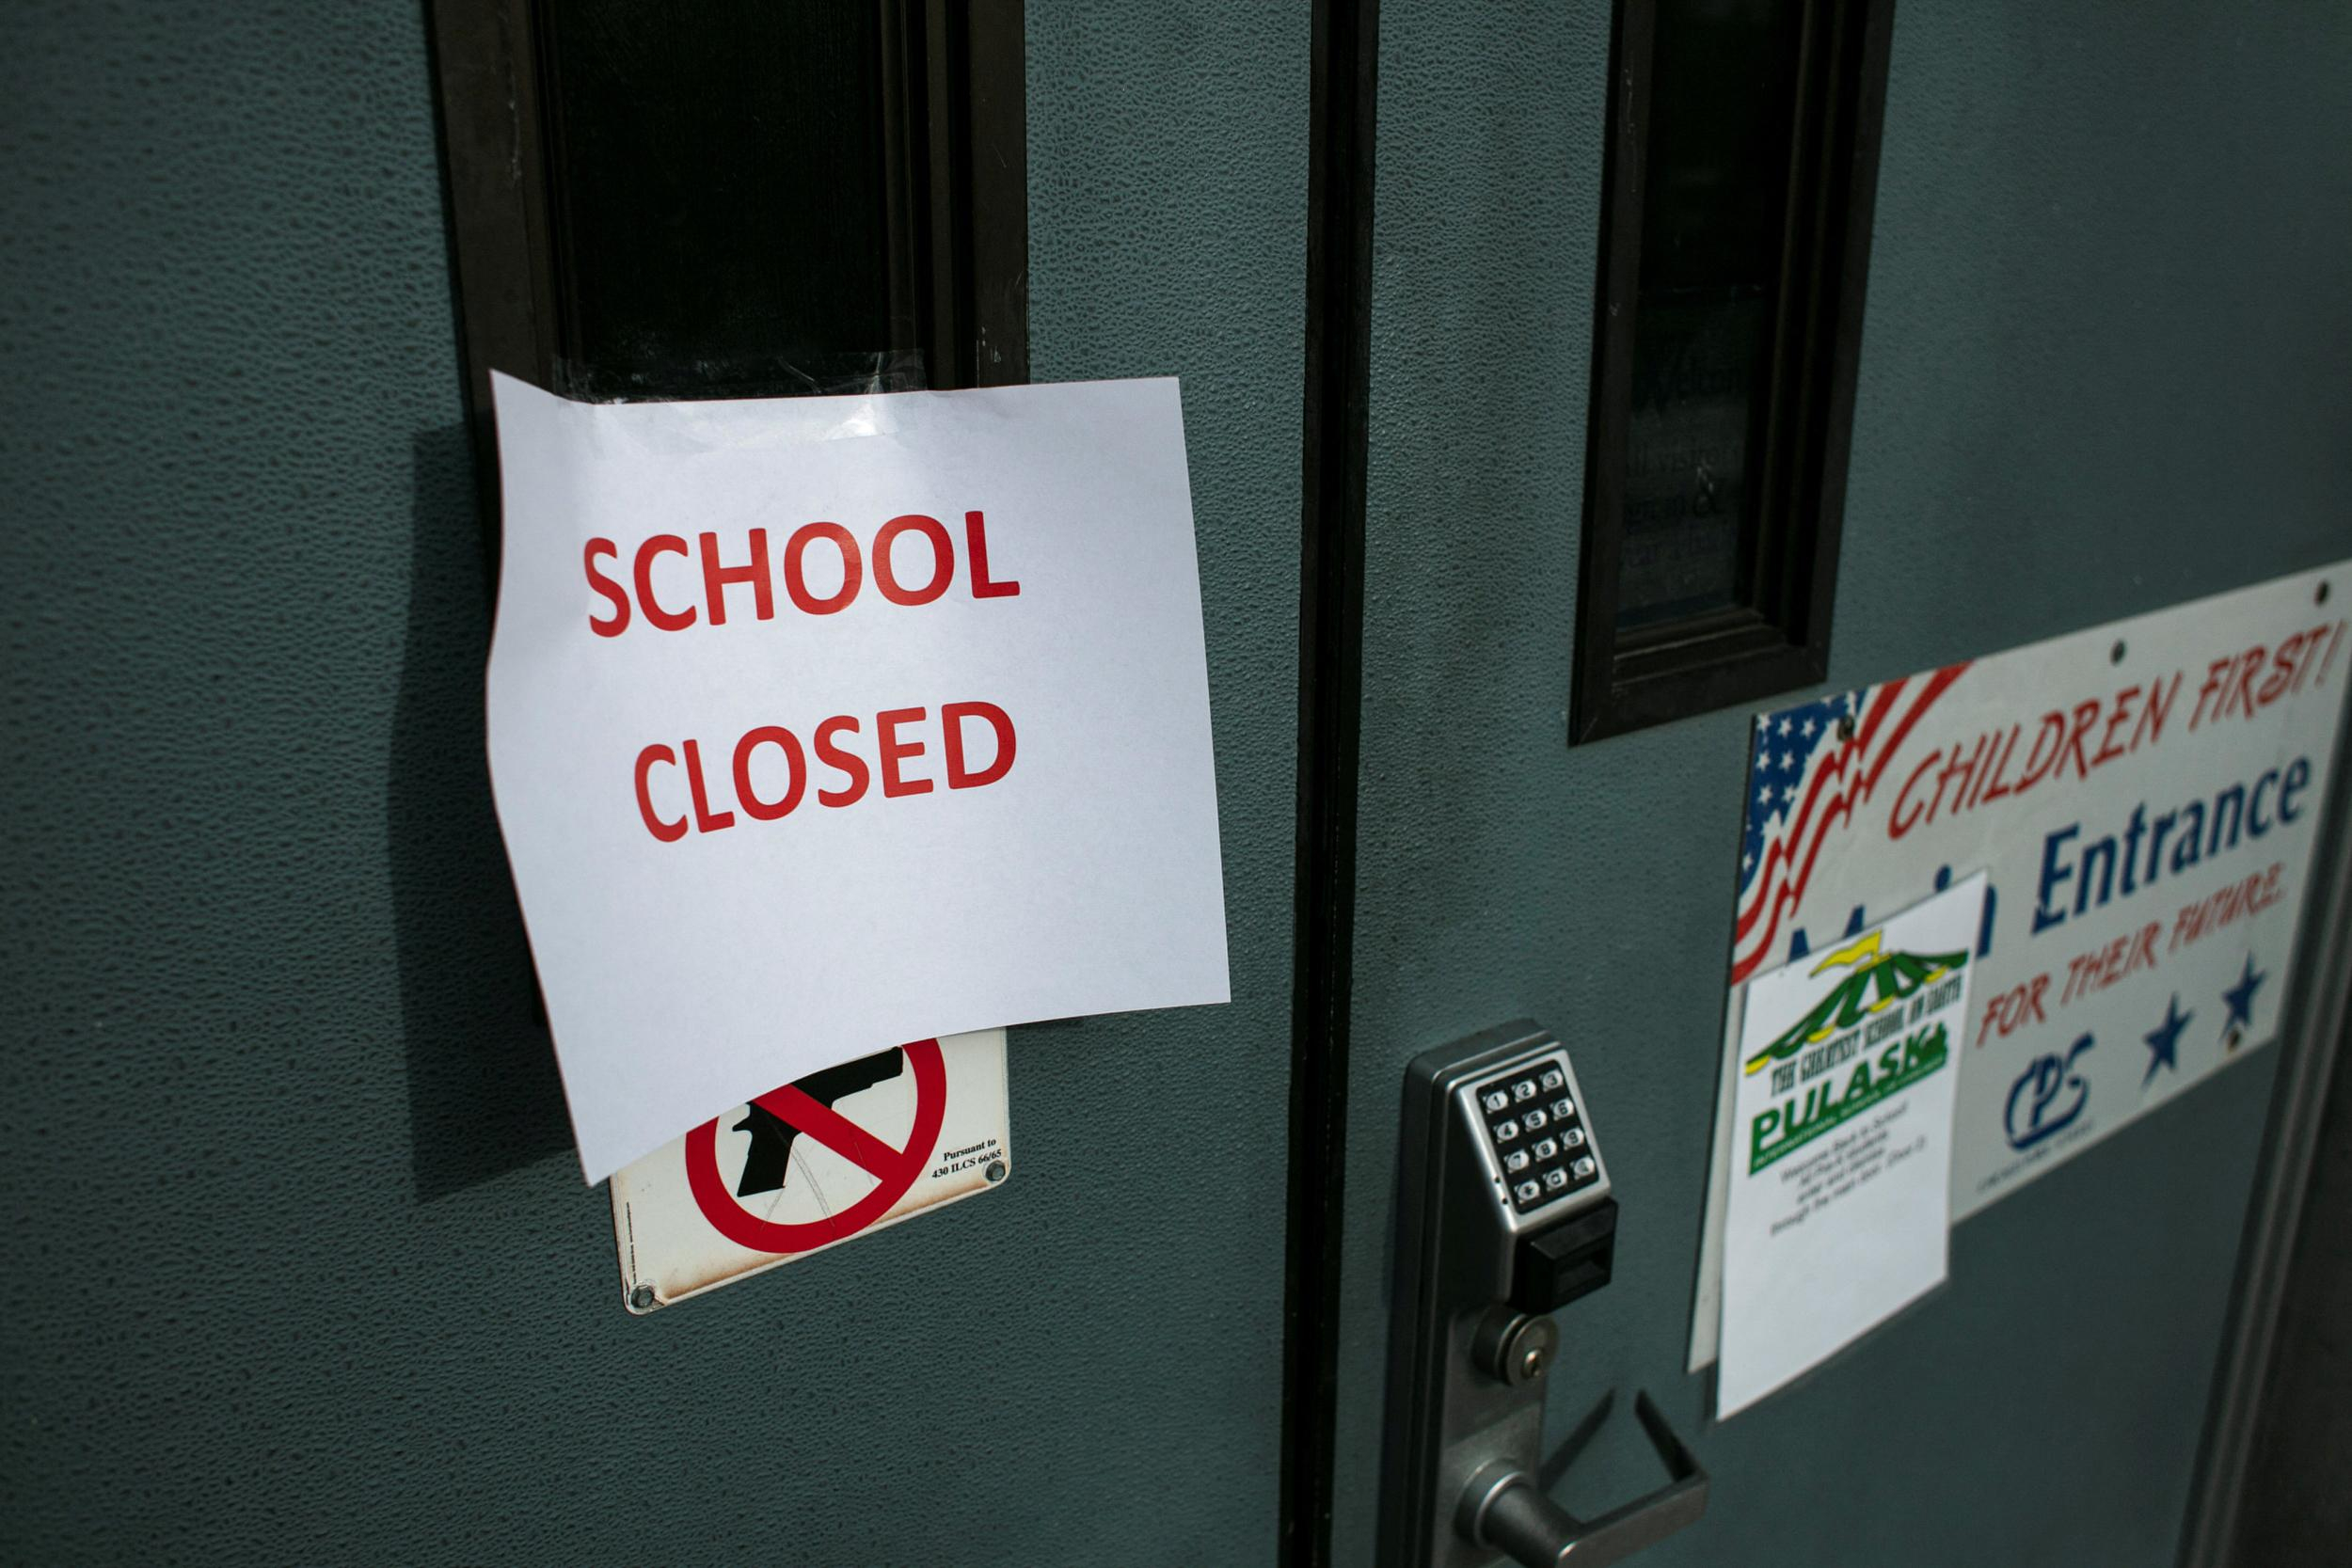 Учителя хотели дистанционку, но власти отменили уроки: в Чикаго закрыли школы из-за споров